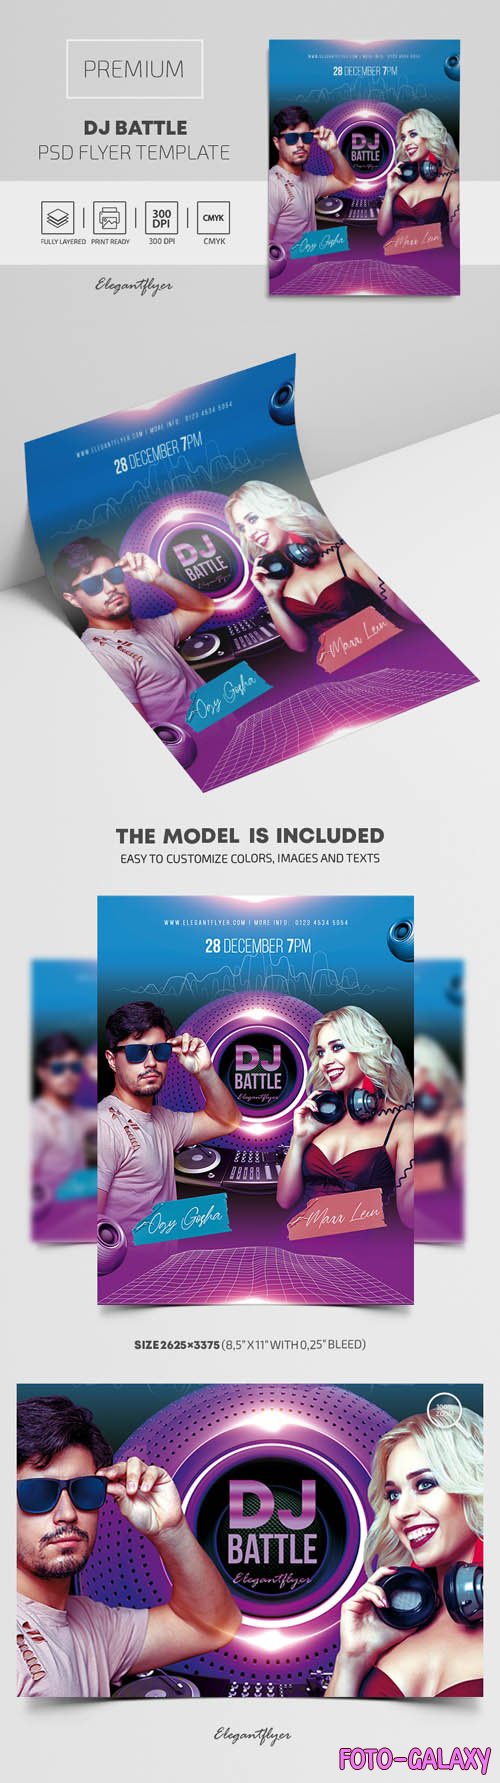 DJ Battle Premium PSD Flyer Template